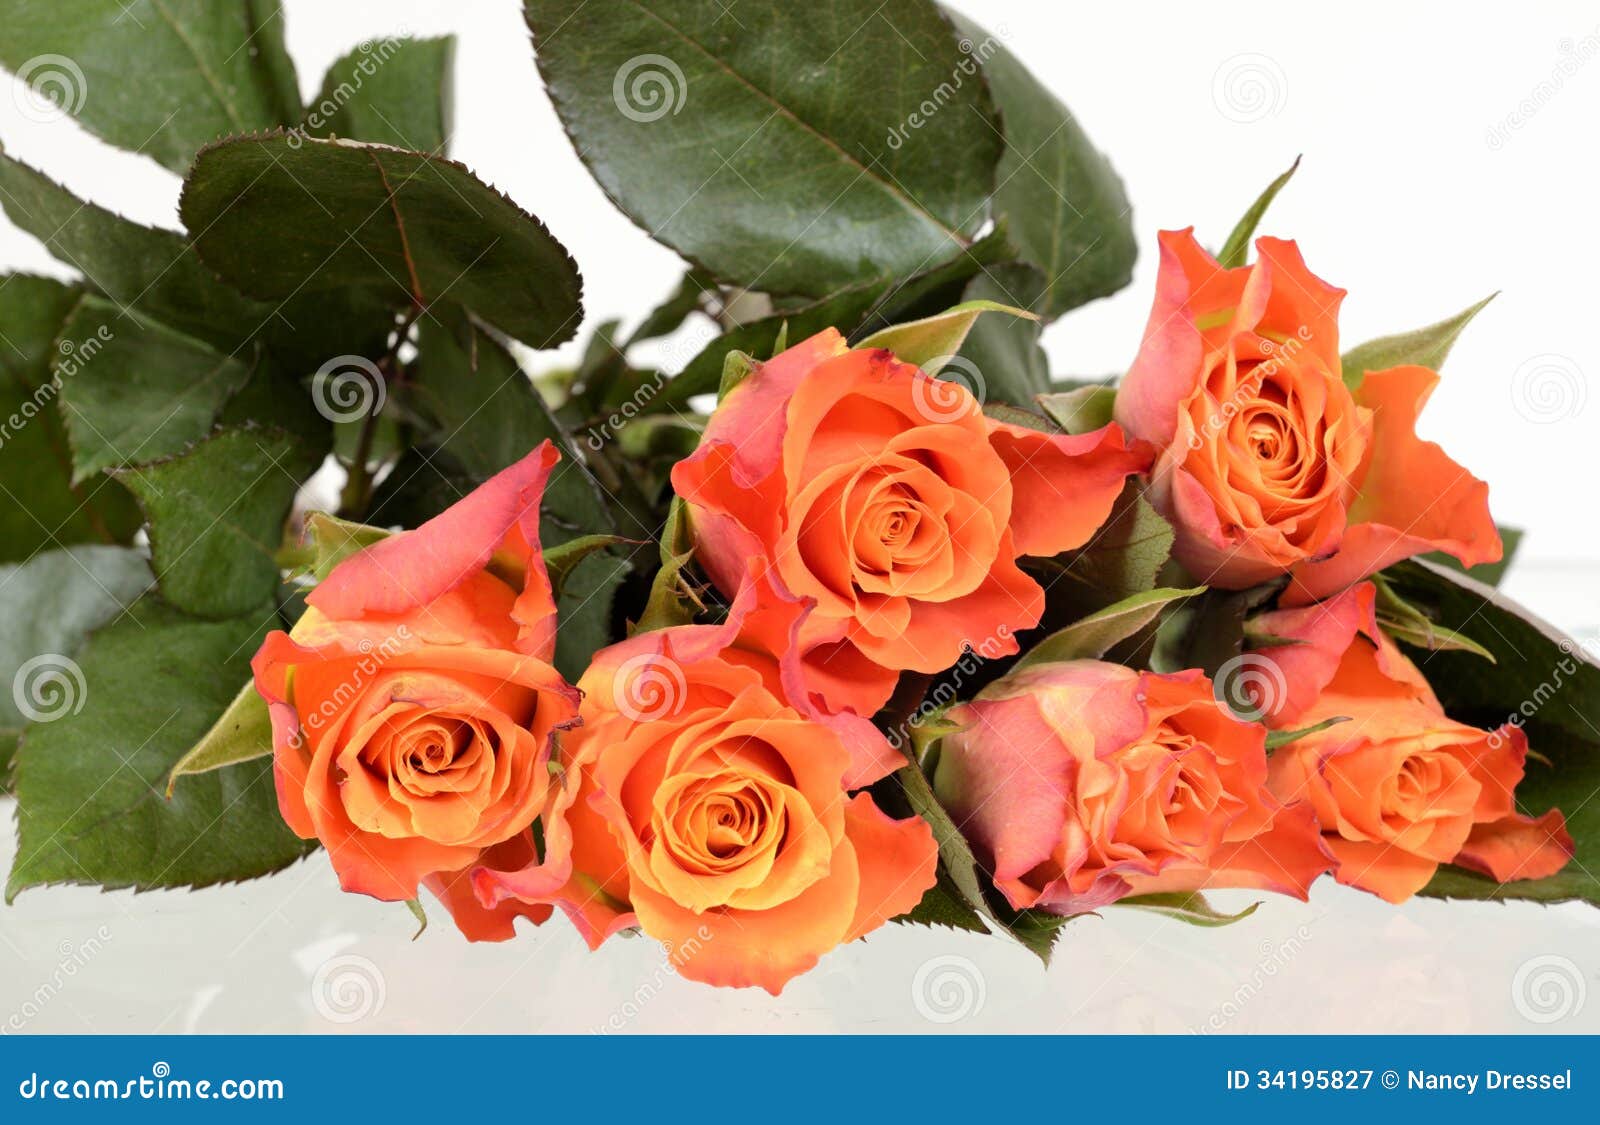 Orange roses on white stock image. Image of arrangement - 34195827